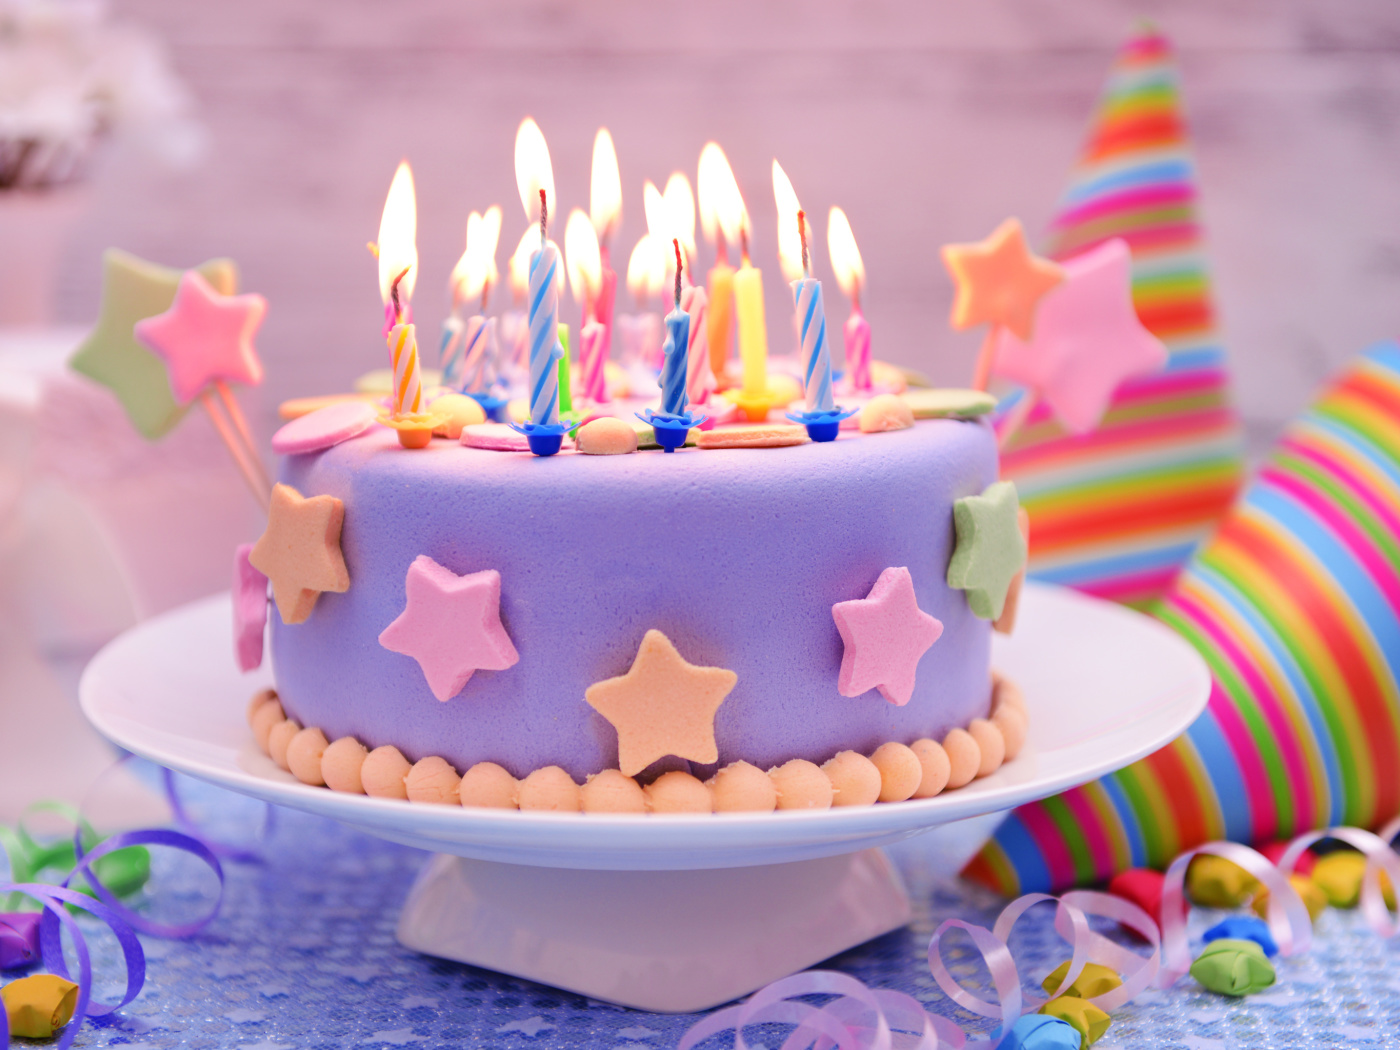 Обои Happy Birthday Cake 1400x1050